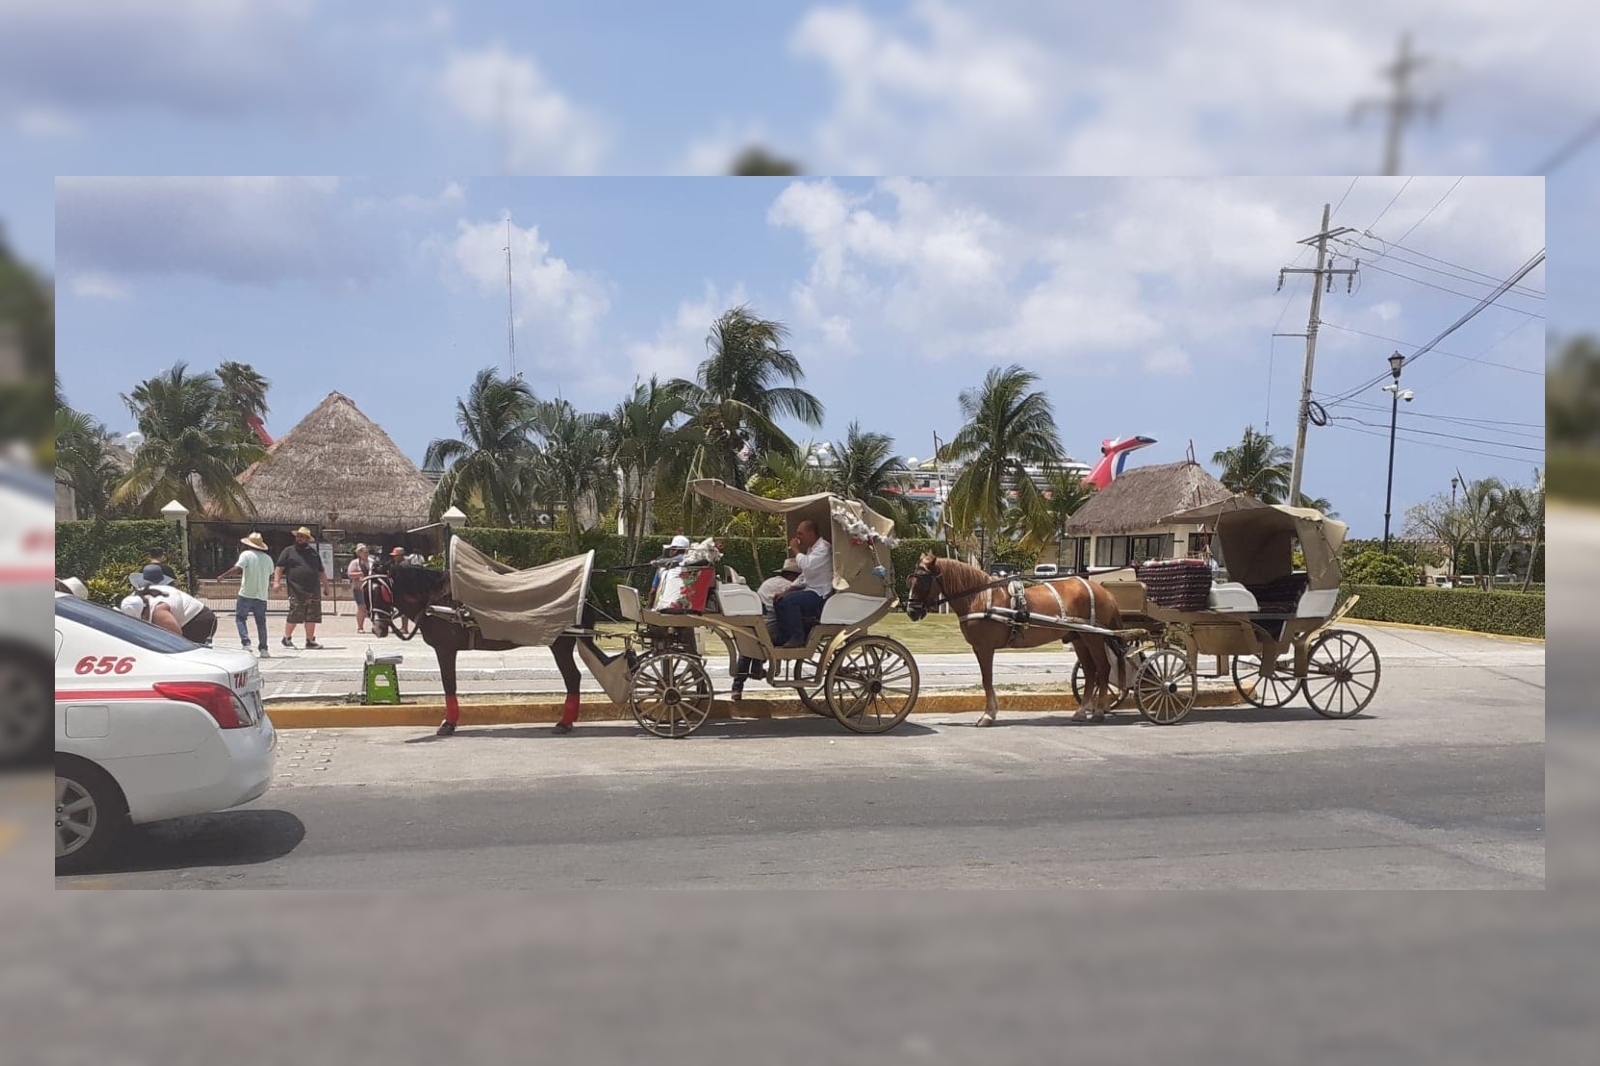 Caballos trabajan bajo altas temperaturas en Cozumel; piden suspender calesas